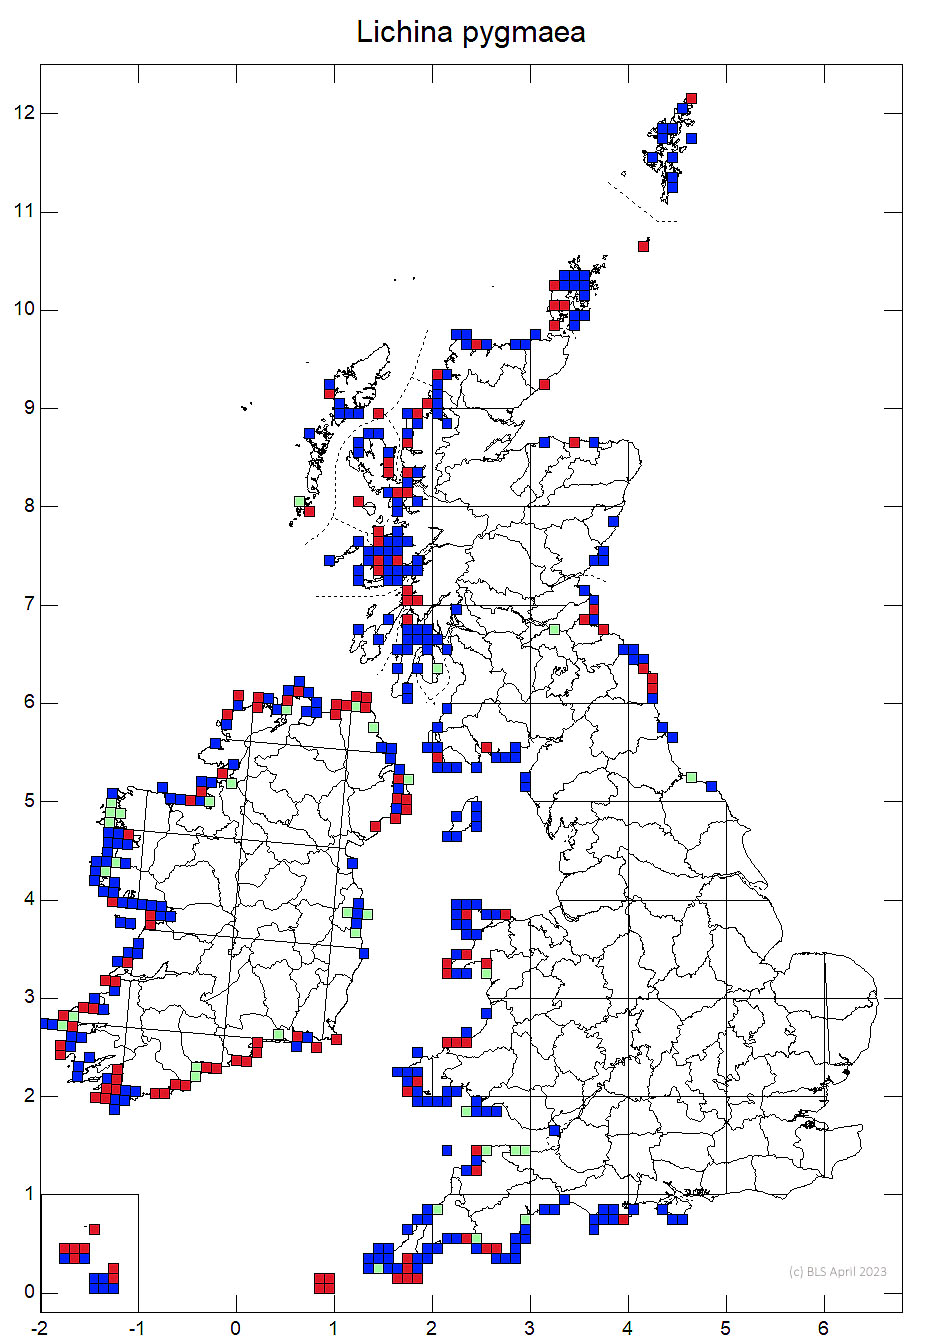 Lichina pygmaea 10km sq distribution map